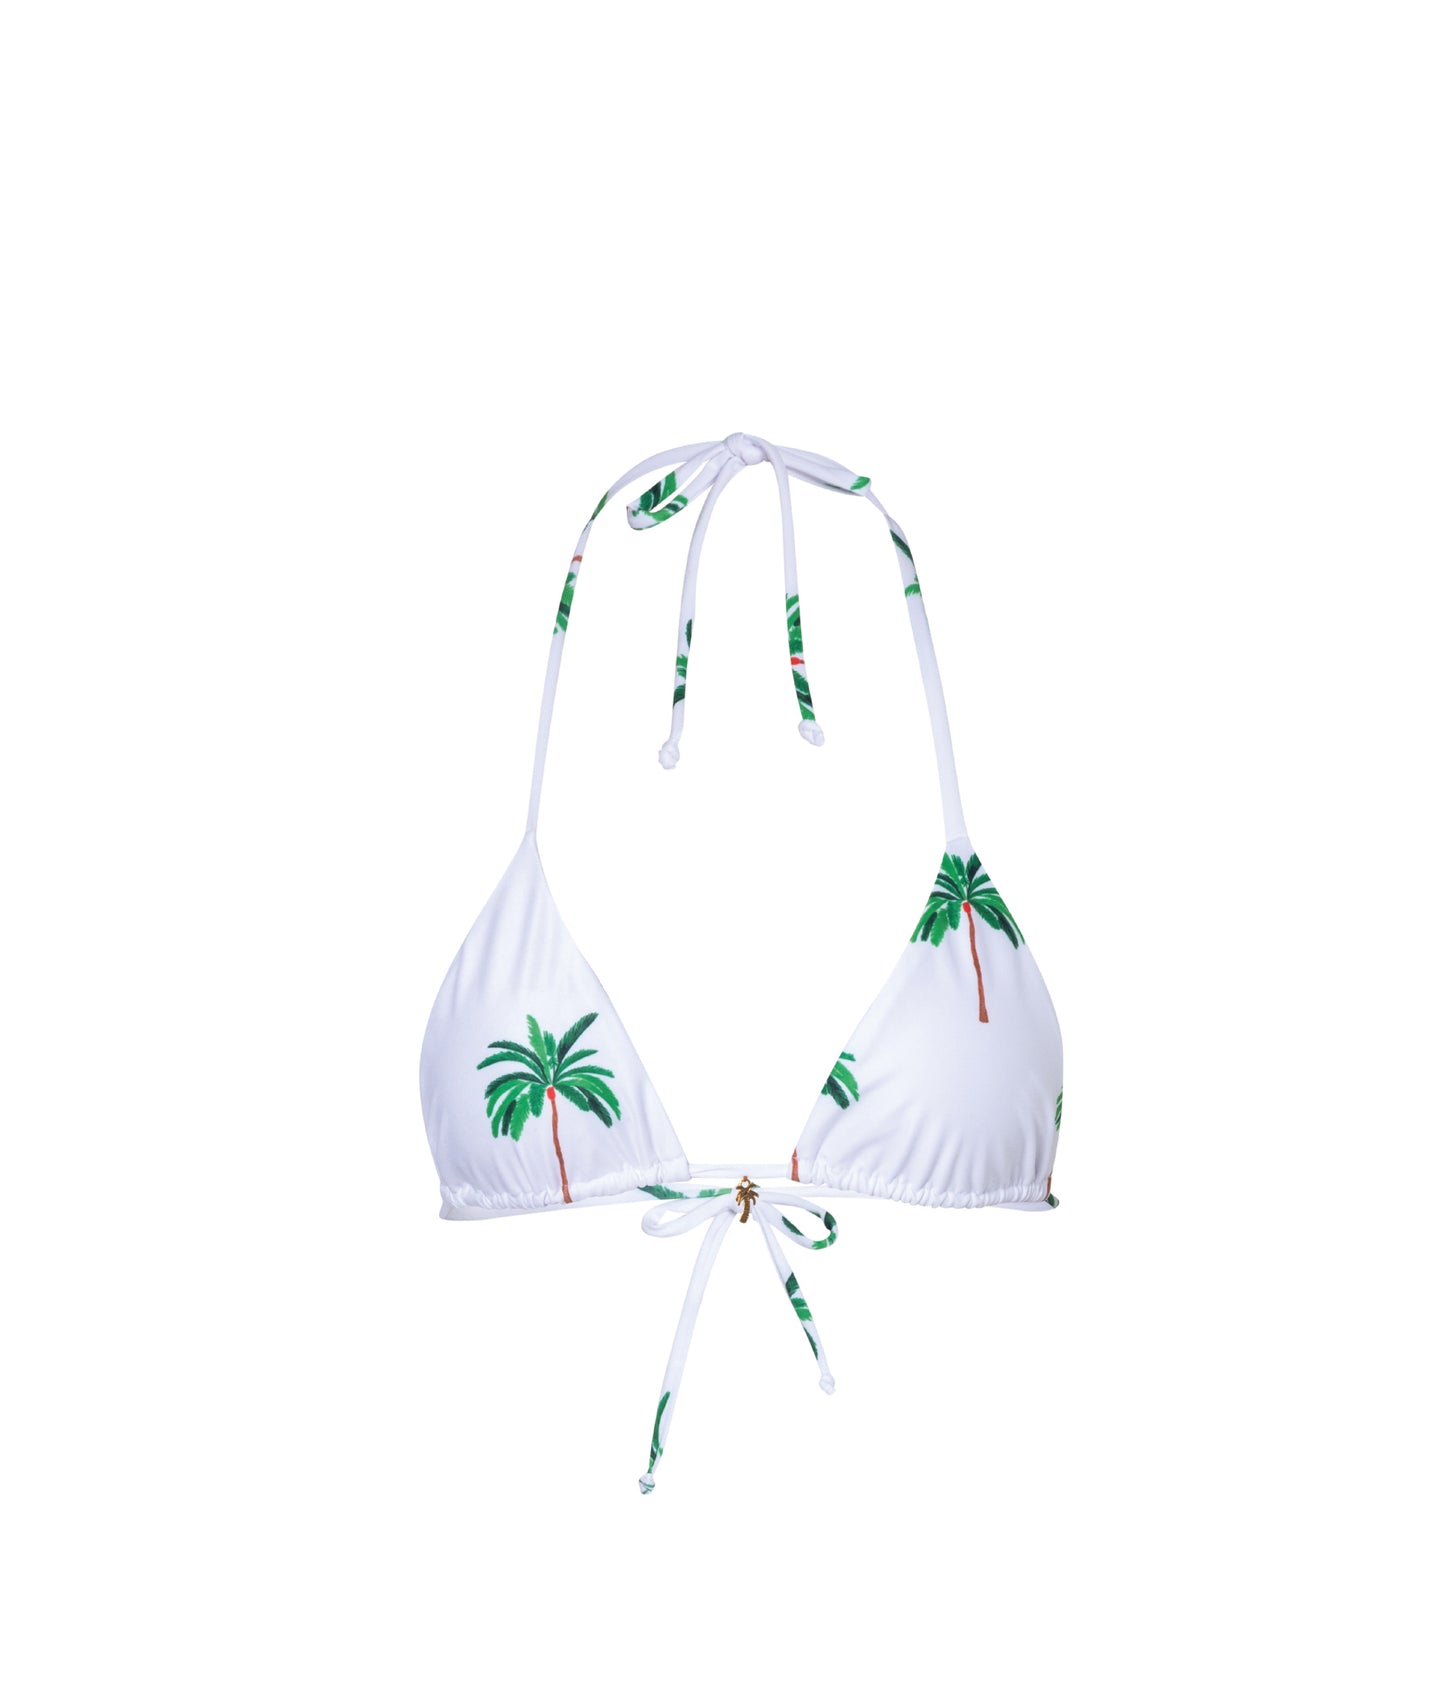 Verdelimon - Bikini Top -  Moa - Printed - White Palmeras  - Front 